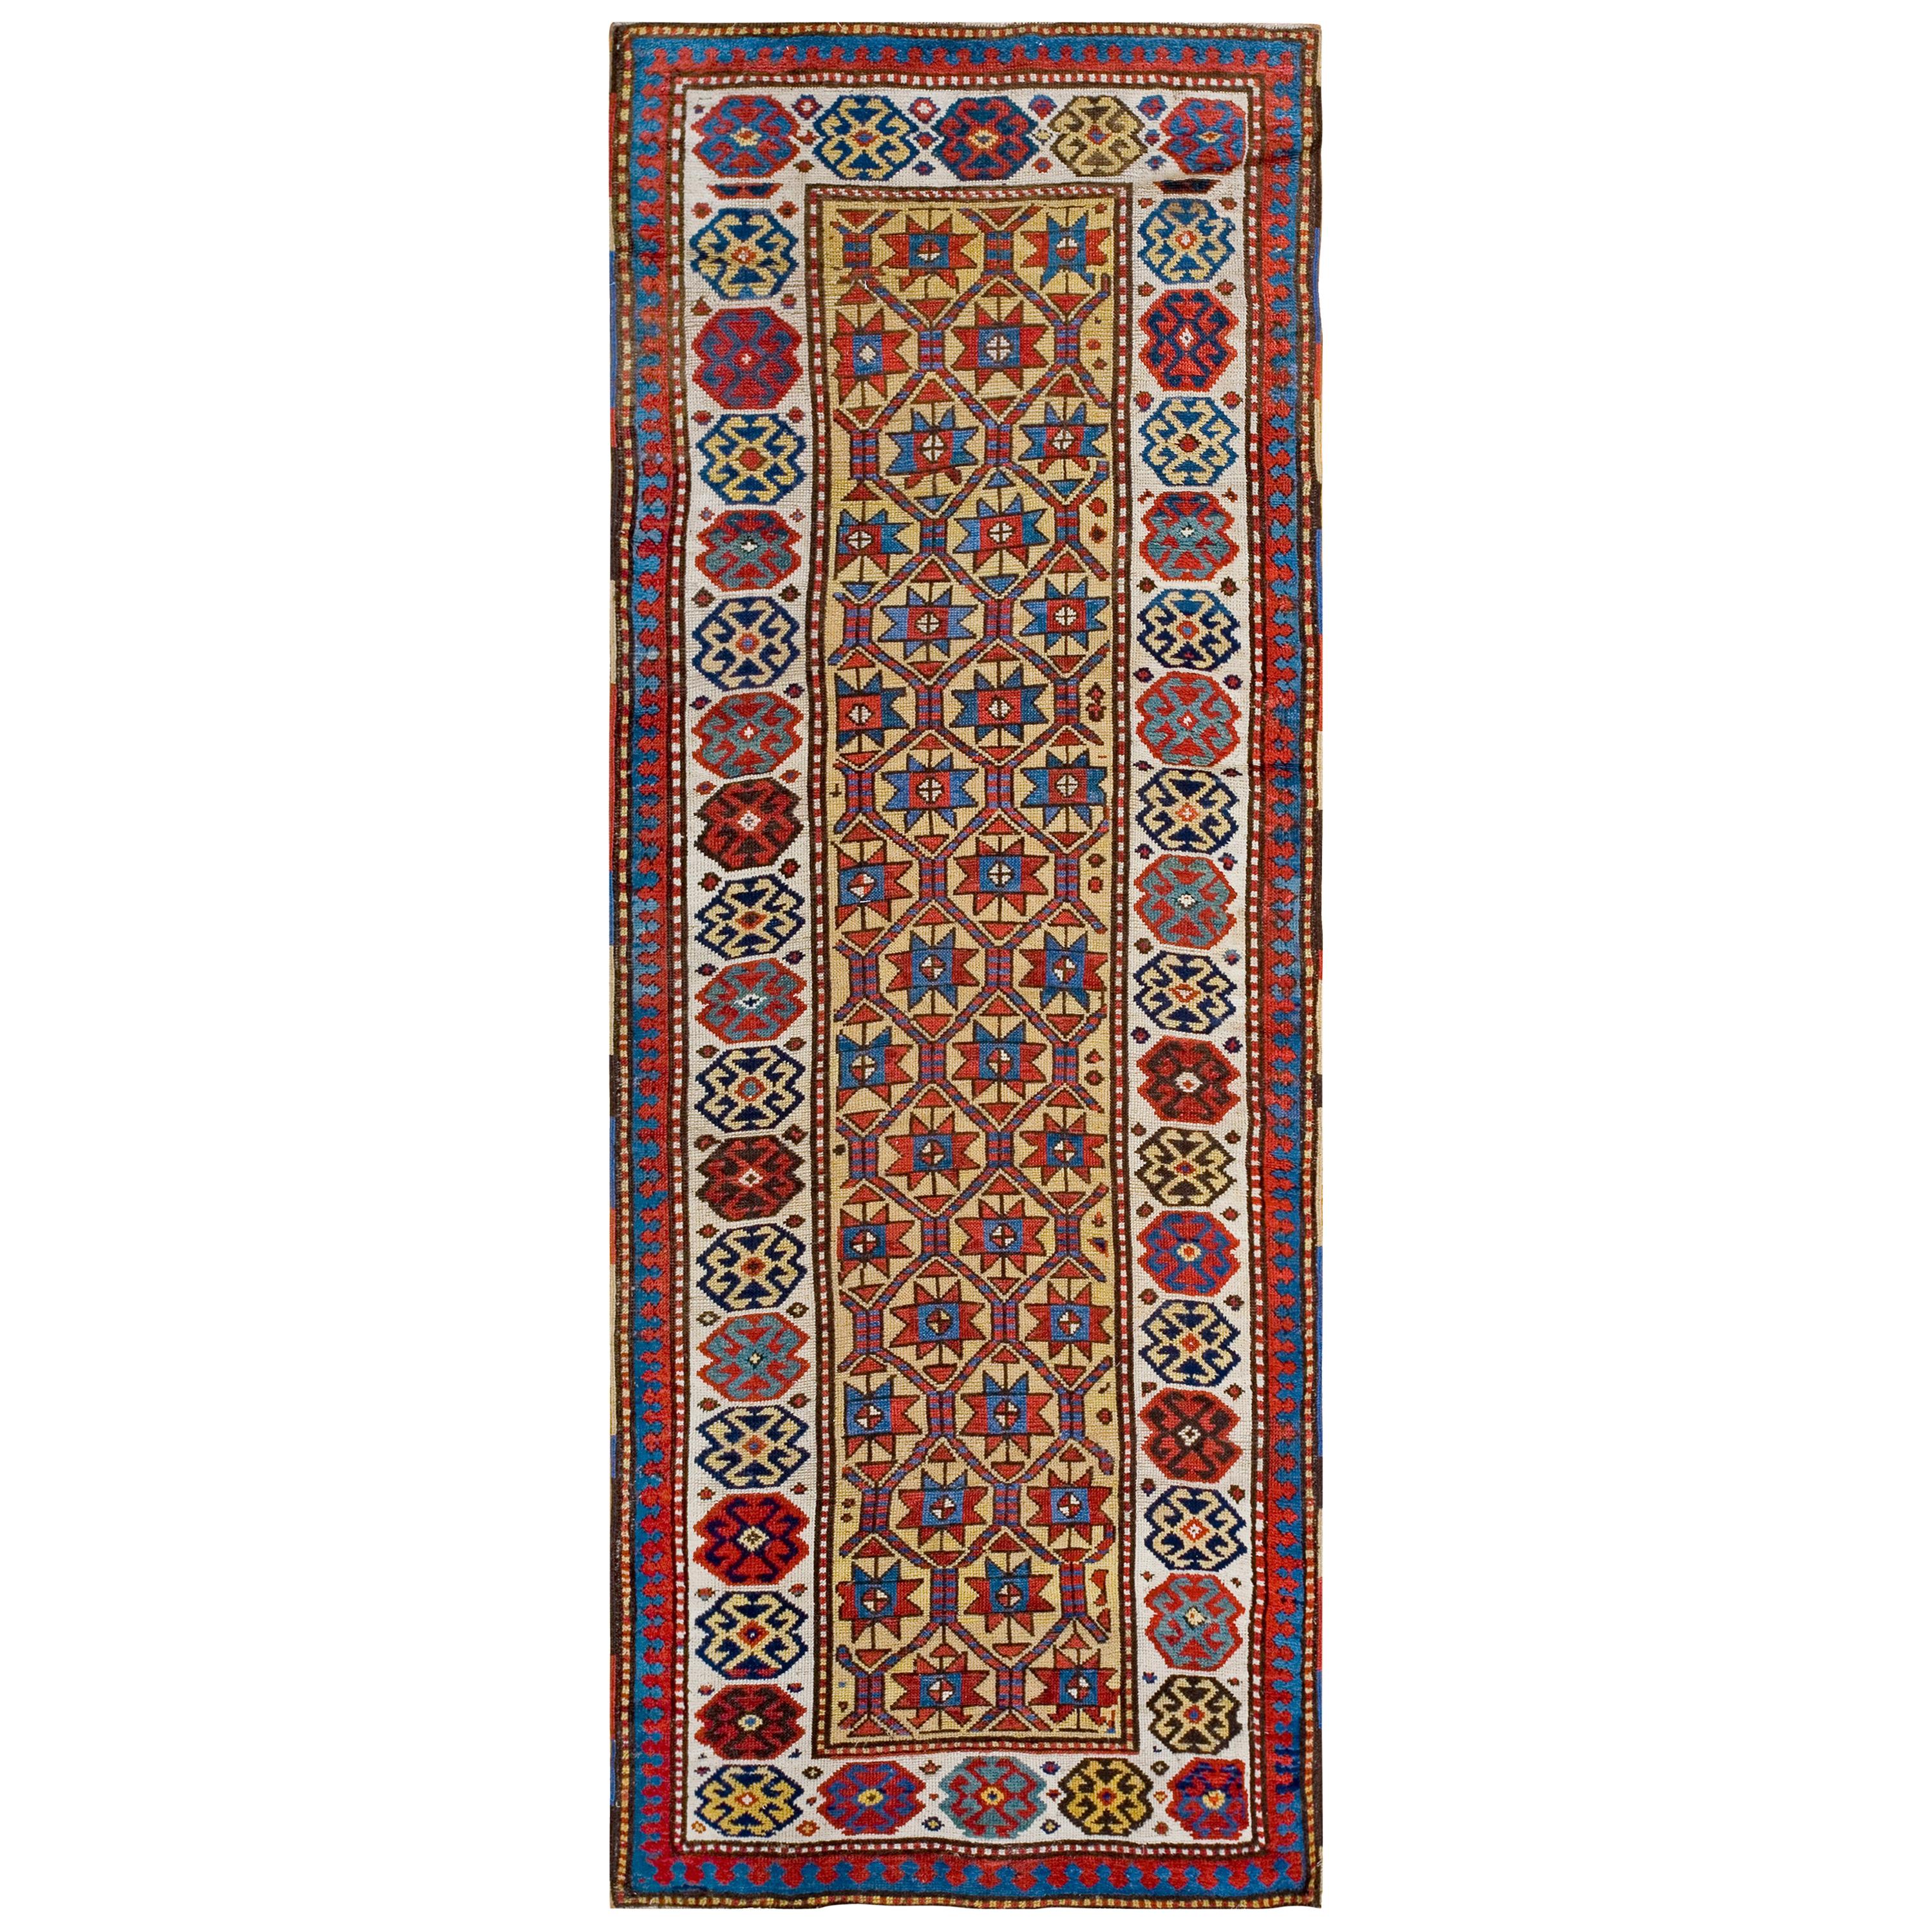 Kaukasischer Moghan-Teppich des 19. Jahrhunderts ( 3'2" x 8'10" - 97 x 269")